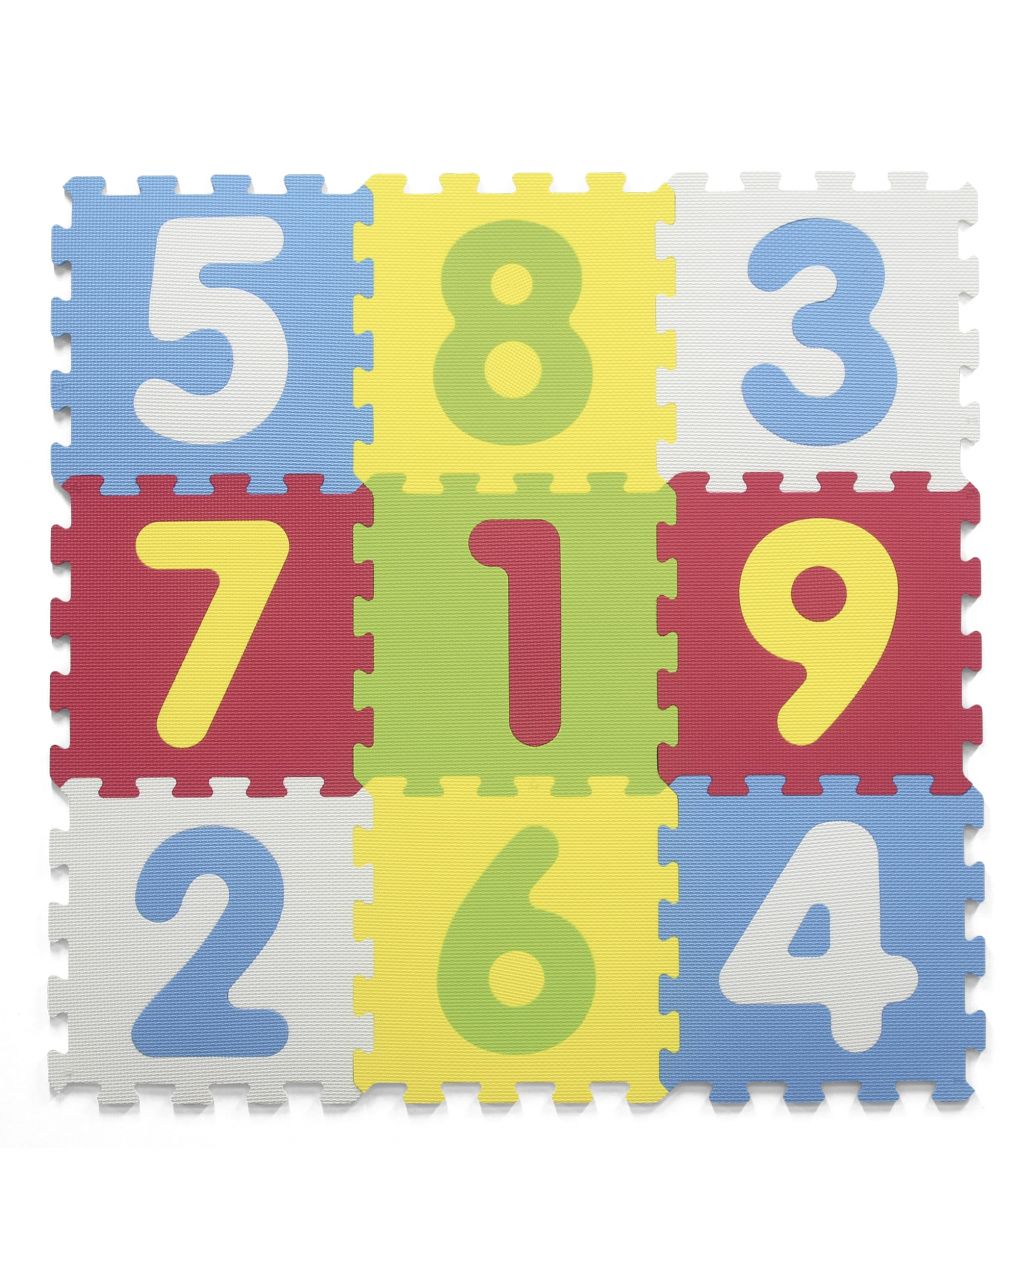 Alfombra puzzle numérico 9pcs - Baby Smile